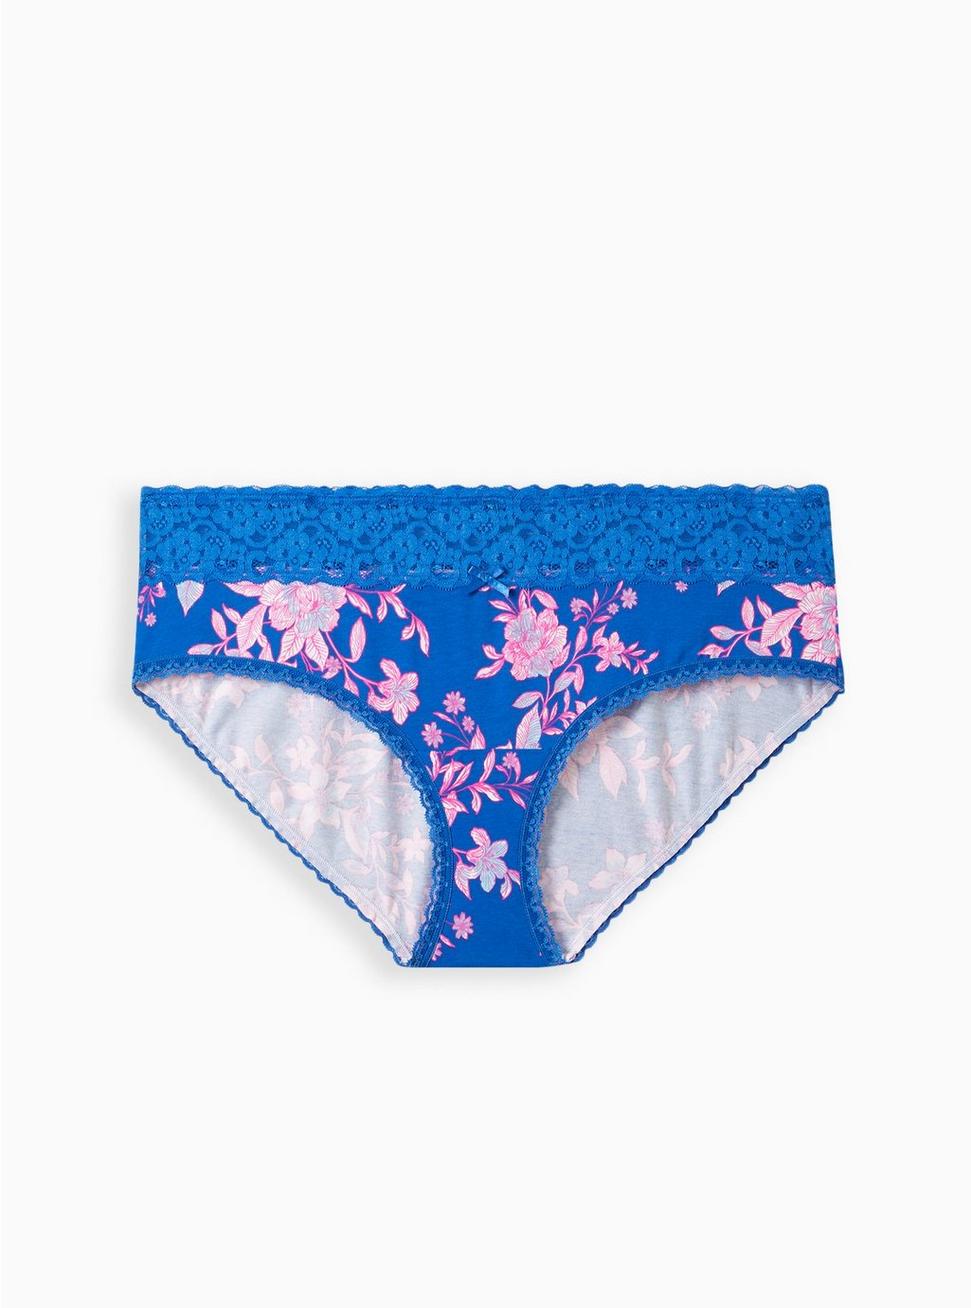 Cotton Mid-Rise Hipster Lace Trim Panty, LILLIAN FLORAL BLUE, hi-res